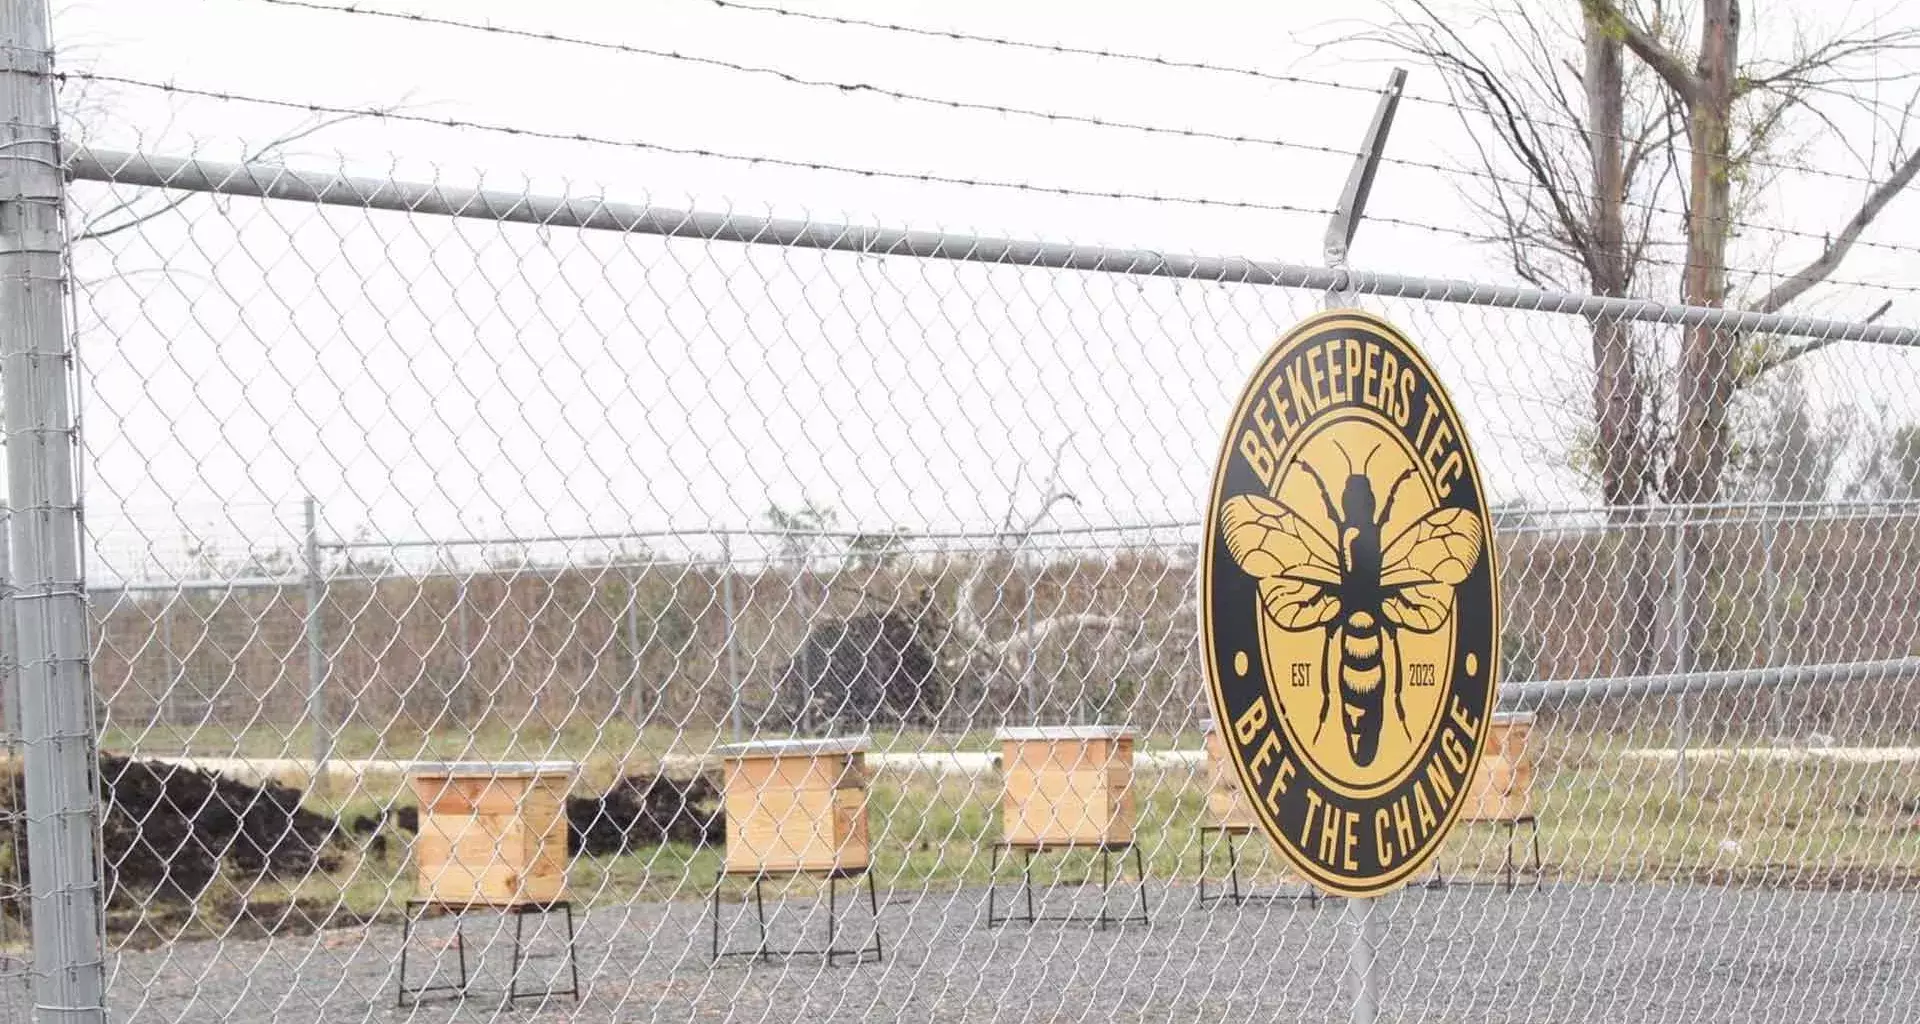 Tec campus Querétaro inaugura Beekeepers Tec, un apiario estudiantil donde se trabajan con abejas mieleras.